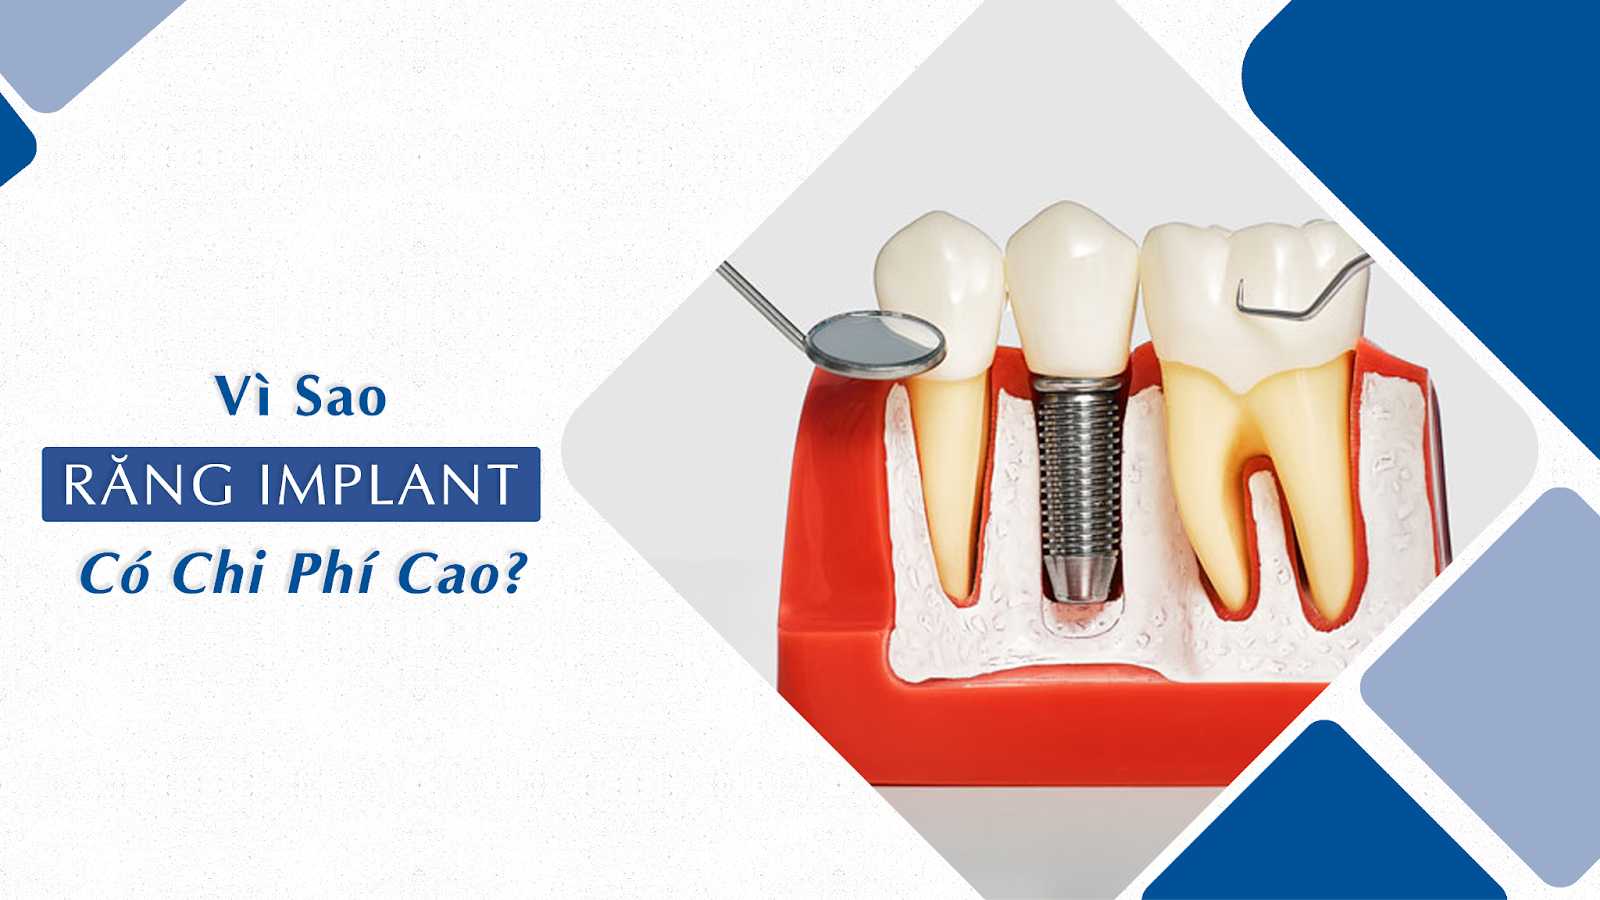 Vì sao trồng răng Implant lại có chi phí cao?